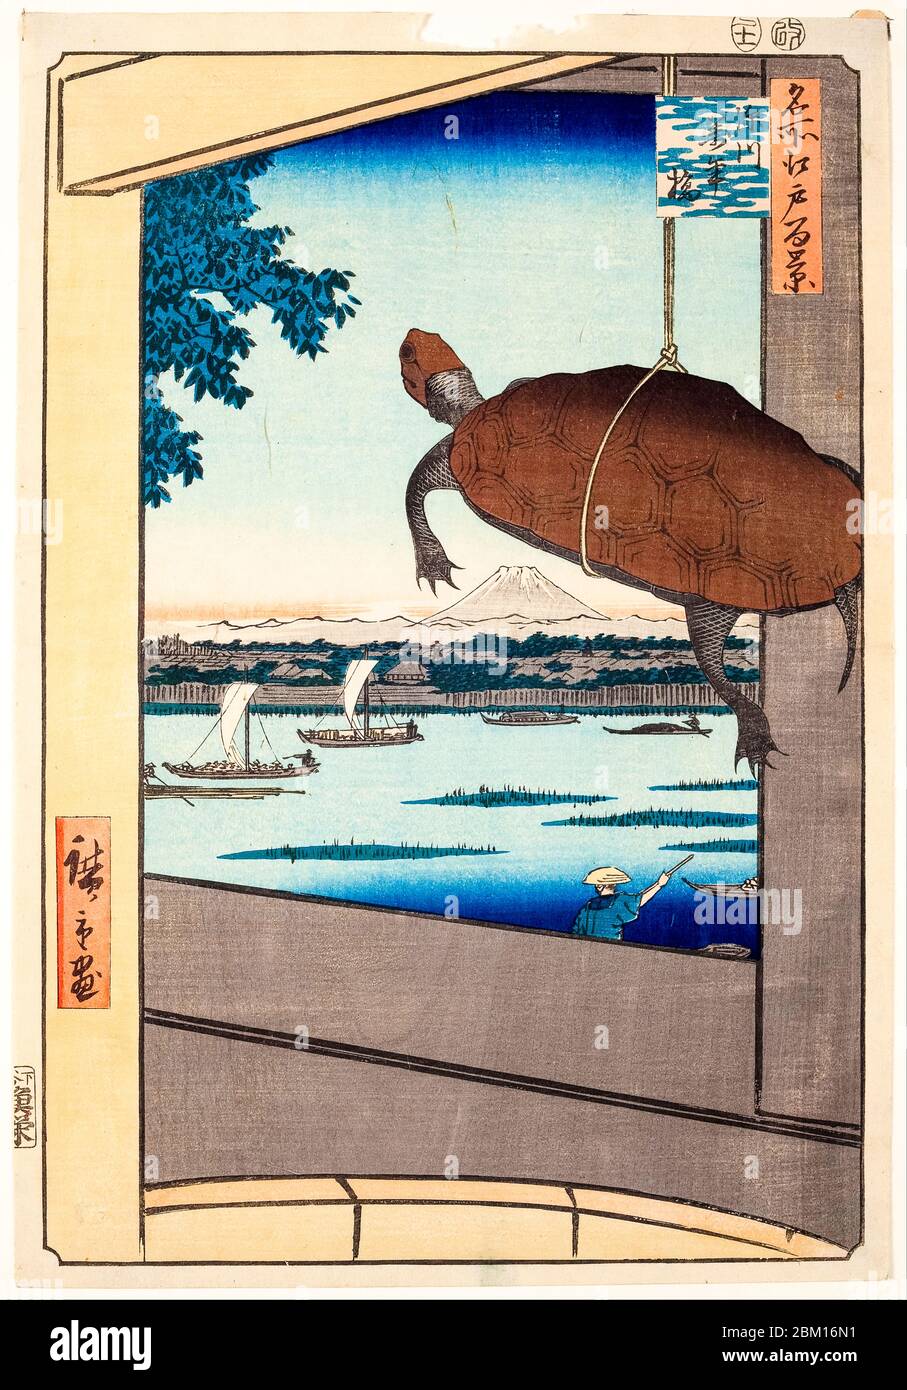 Utagawa Hiroshige, Mannen Bridge, Fukagawa, from the series One Hundred Famous Views of Edo, woodblock print, 1857 Stock Photo